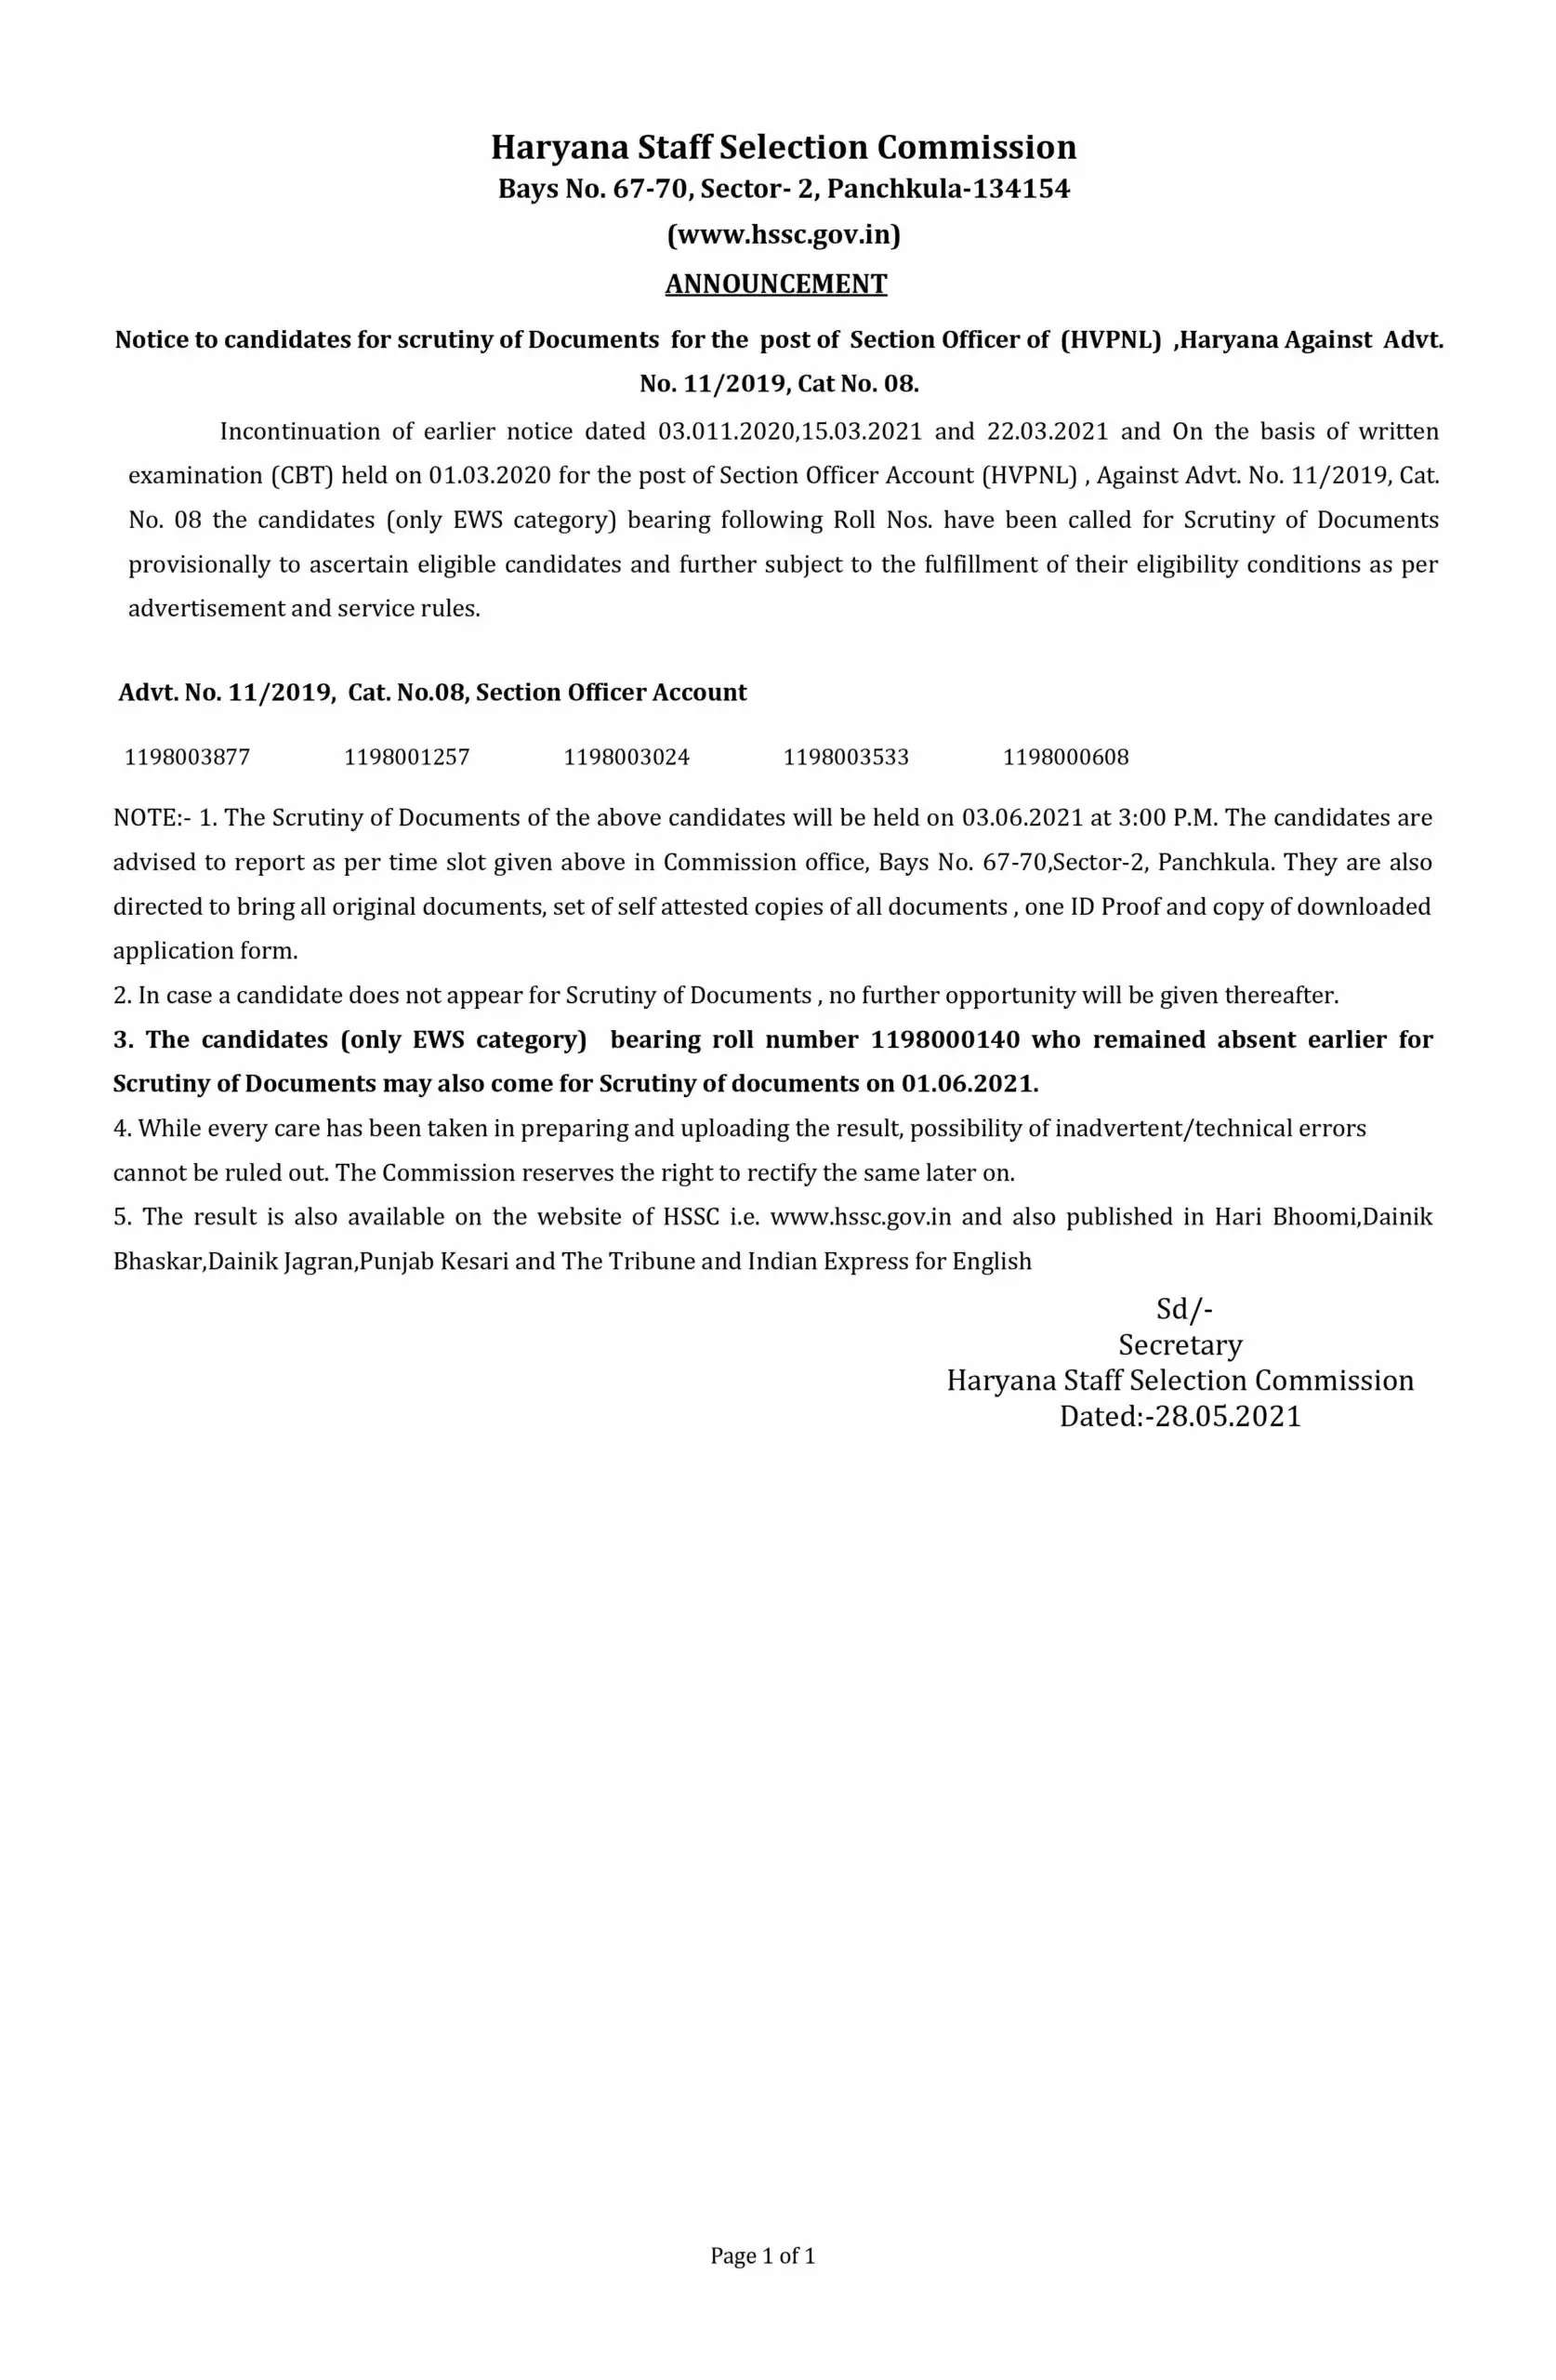 हरियाणा स्टाफ सिलेक्शन कमीशन (HSSC) ने लाइनमैन समेत तीन भर्तियाें के लिए जारी किया जरूरी नोटिस, यहां देखें